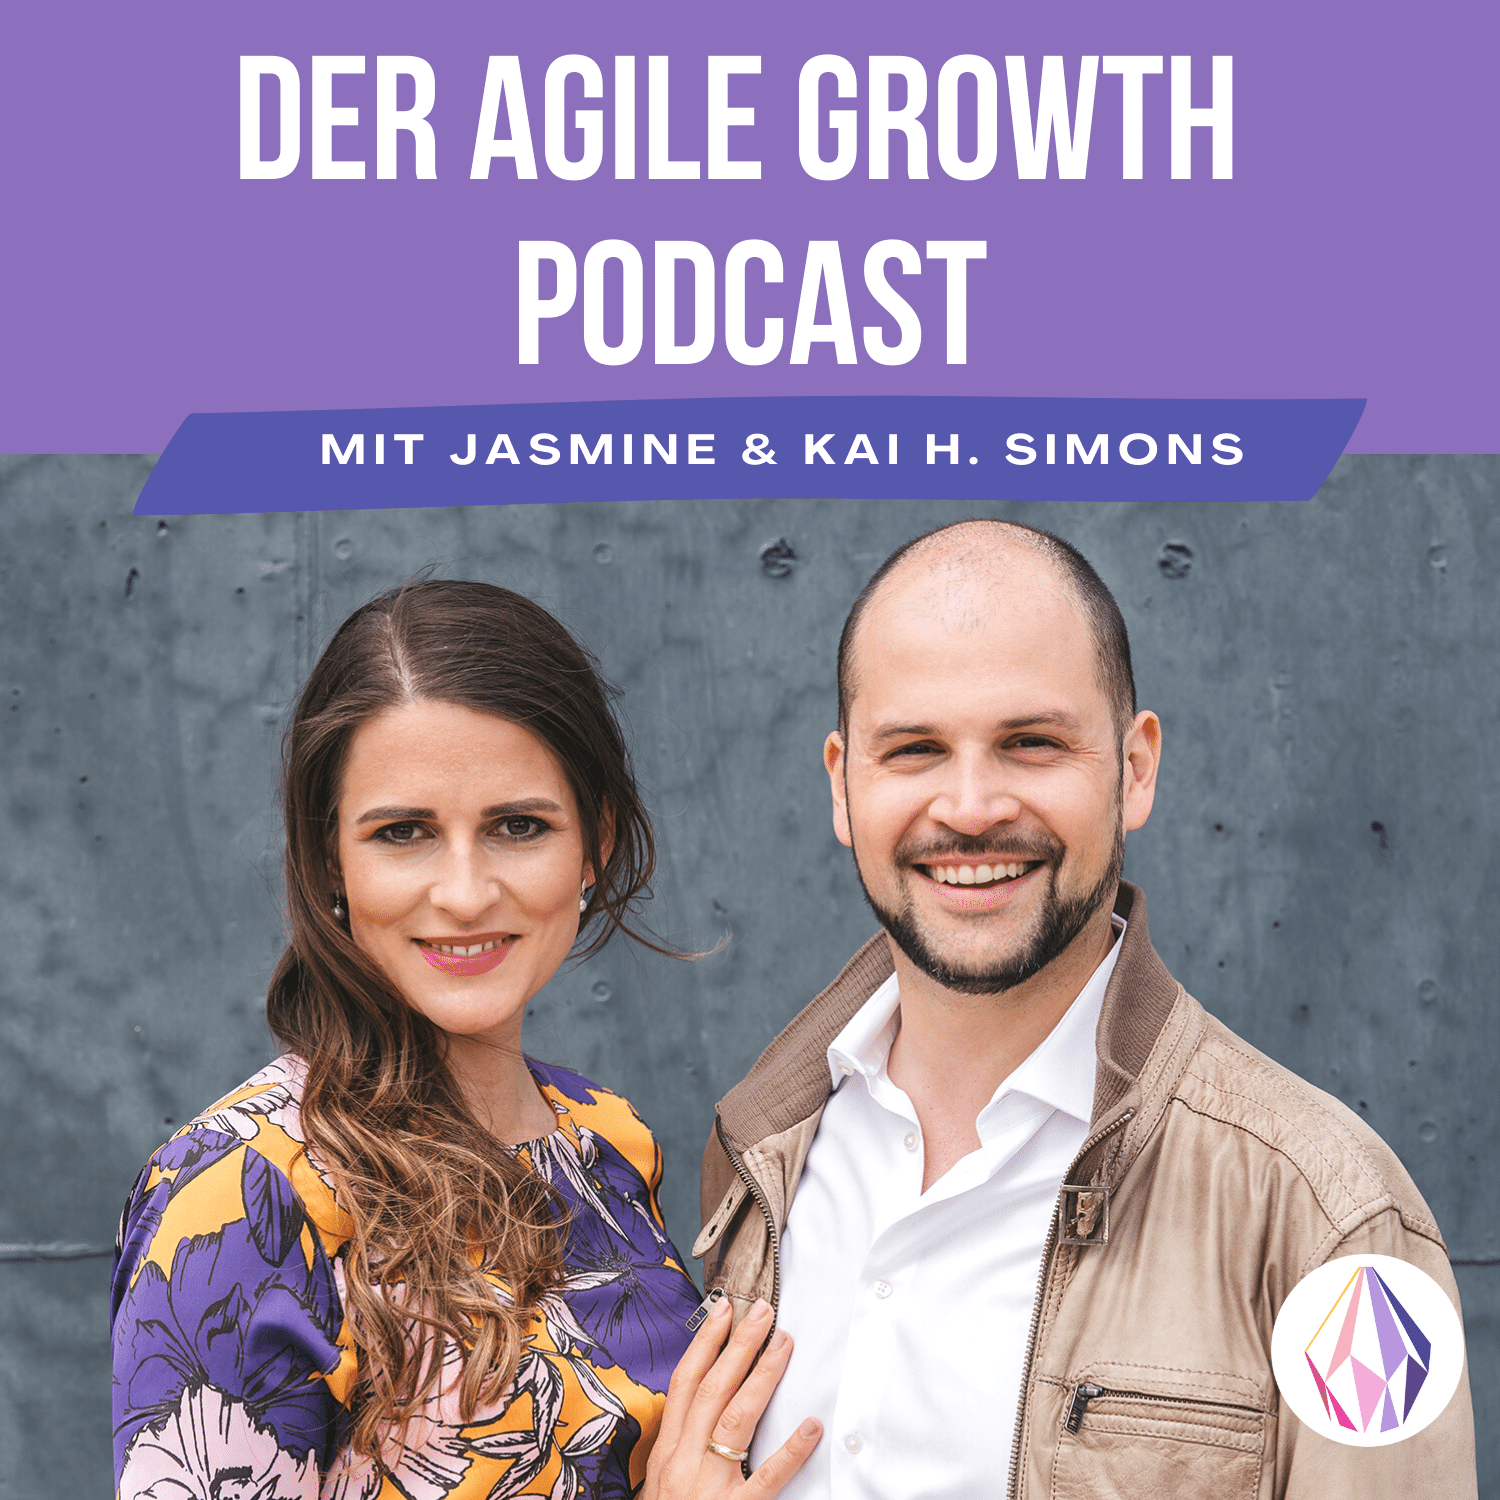 Der Agile Growth Podcast | Agilität führen durch Scrum, Kanban und inneres Wachstum